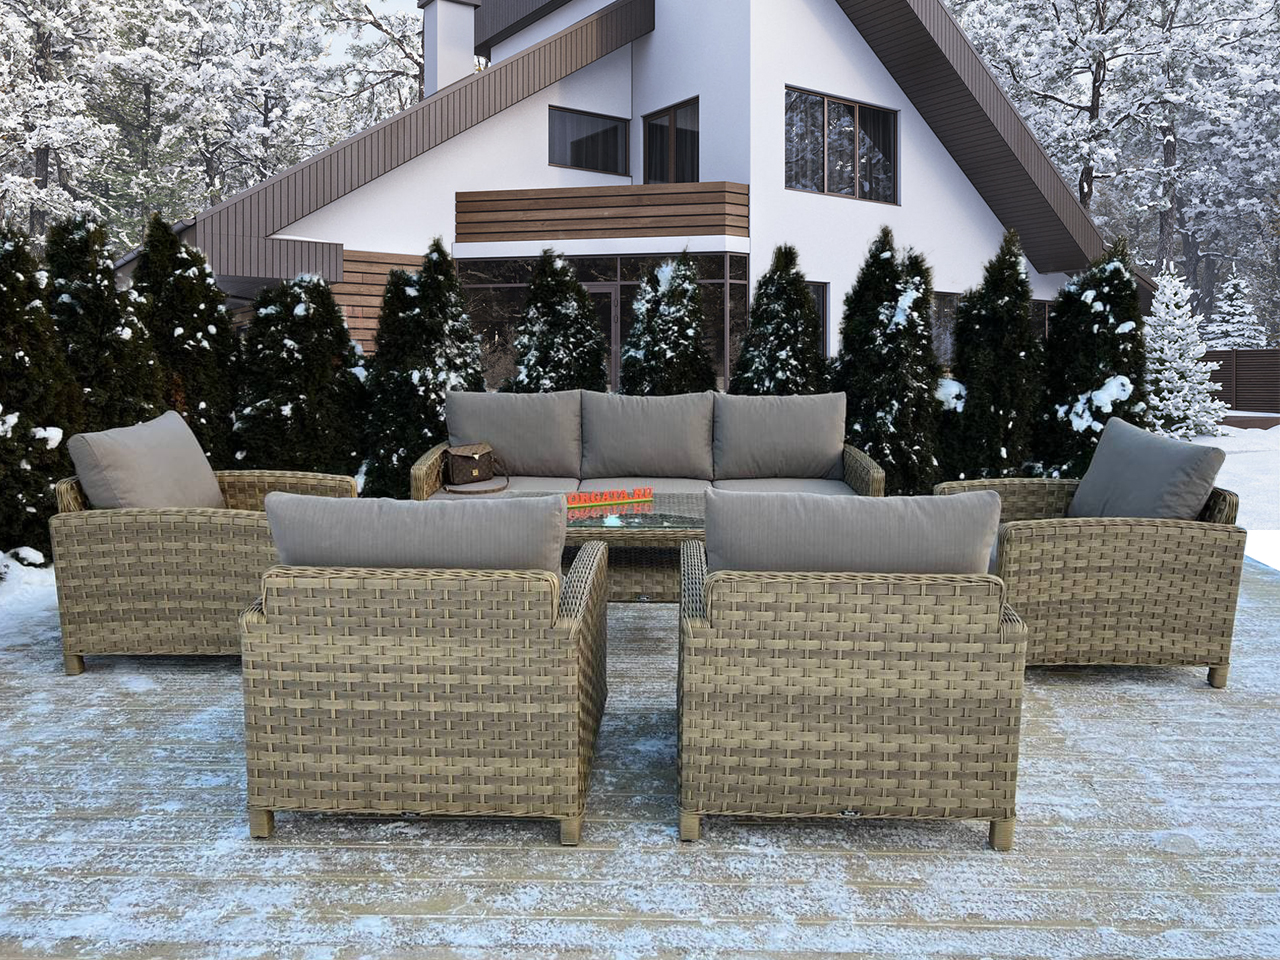 Лаунж зона с диваном 3-х (234) и четырьмя креслами ARIA nature для террасы или патио в загородном доме